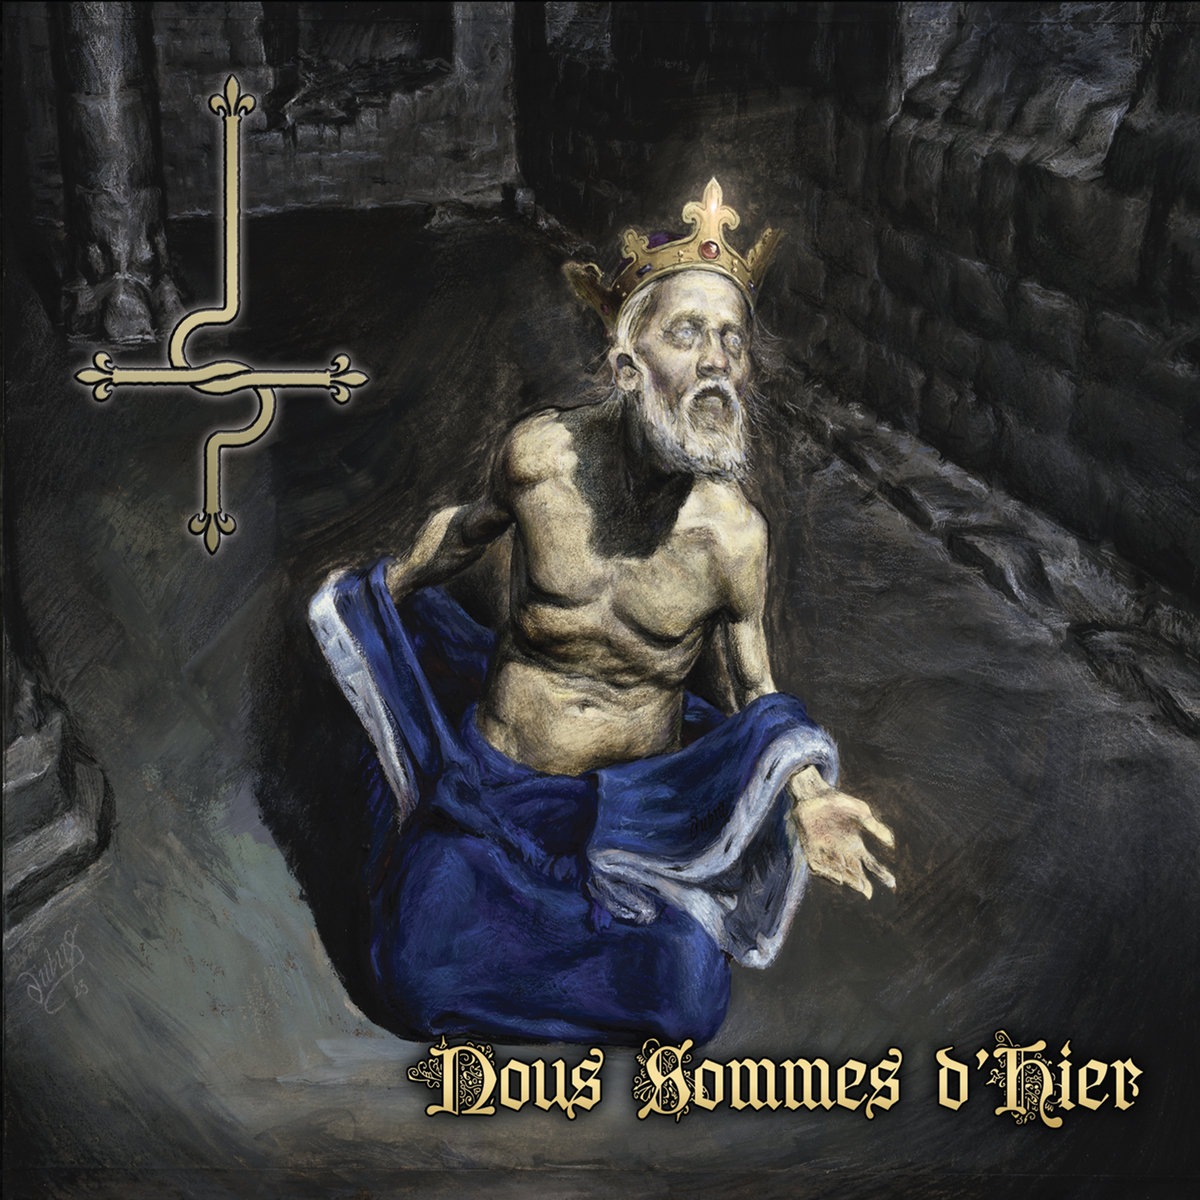 Album Review: Dimmu Borgir - Inspiratio Profanus